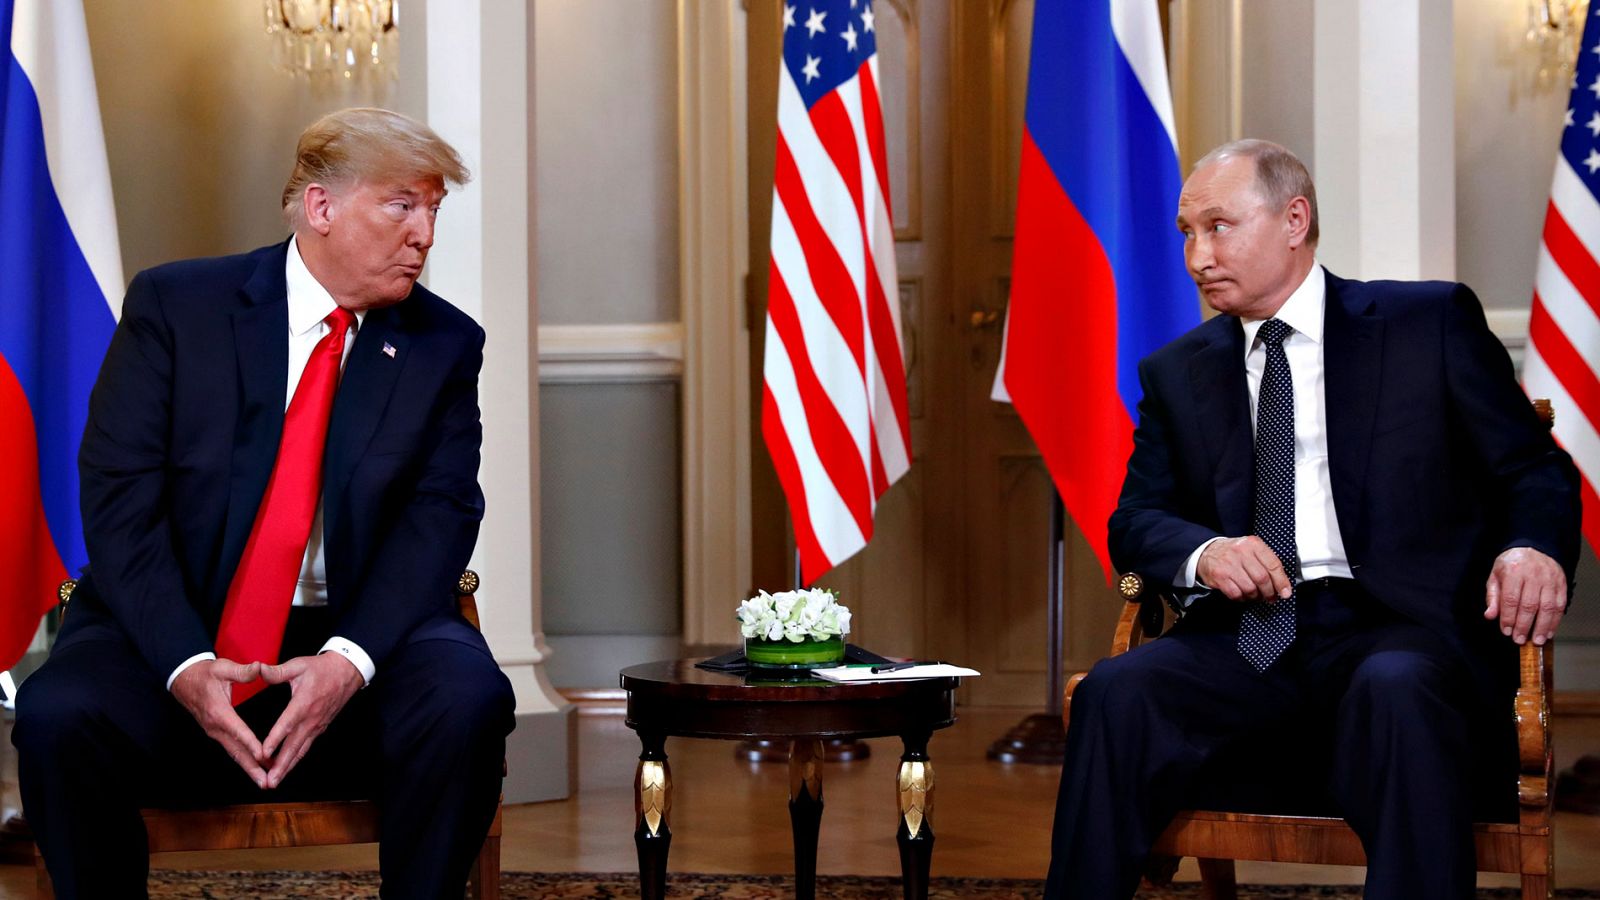 Trump Putin - Trump y Putin califican su encuentro de "útil y productivo" pese a la falta de acuerdos específicos